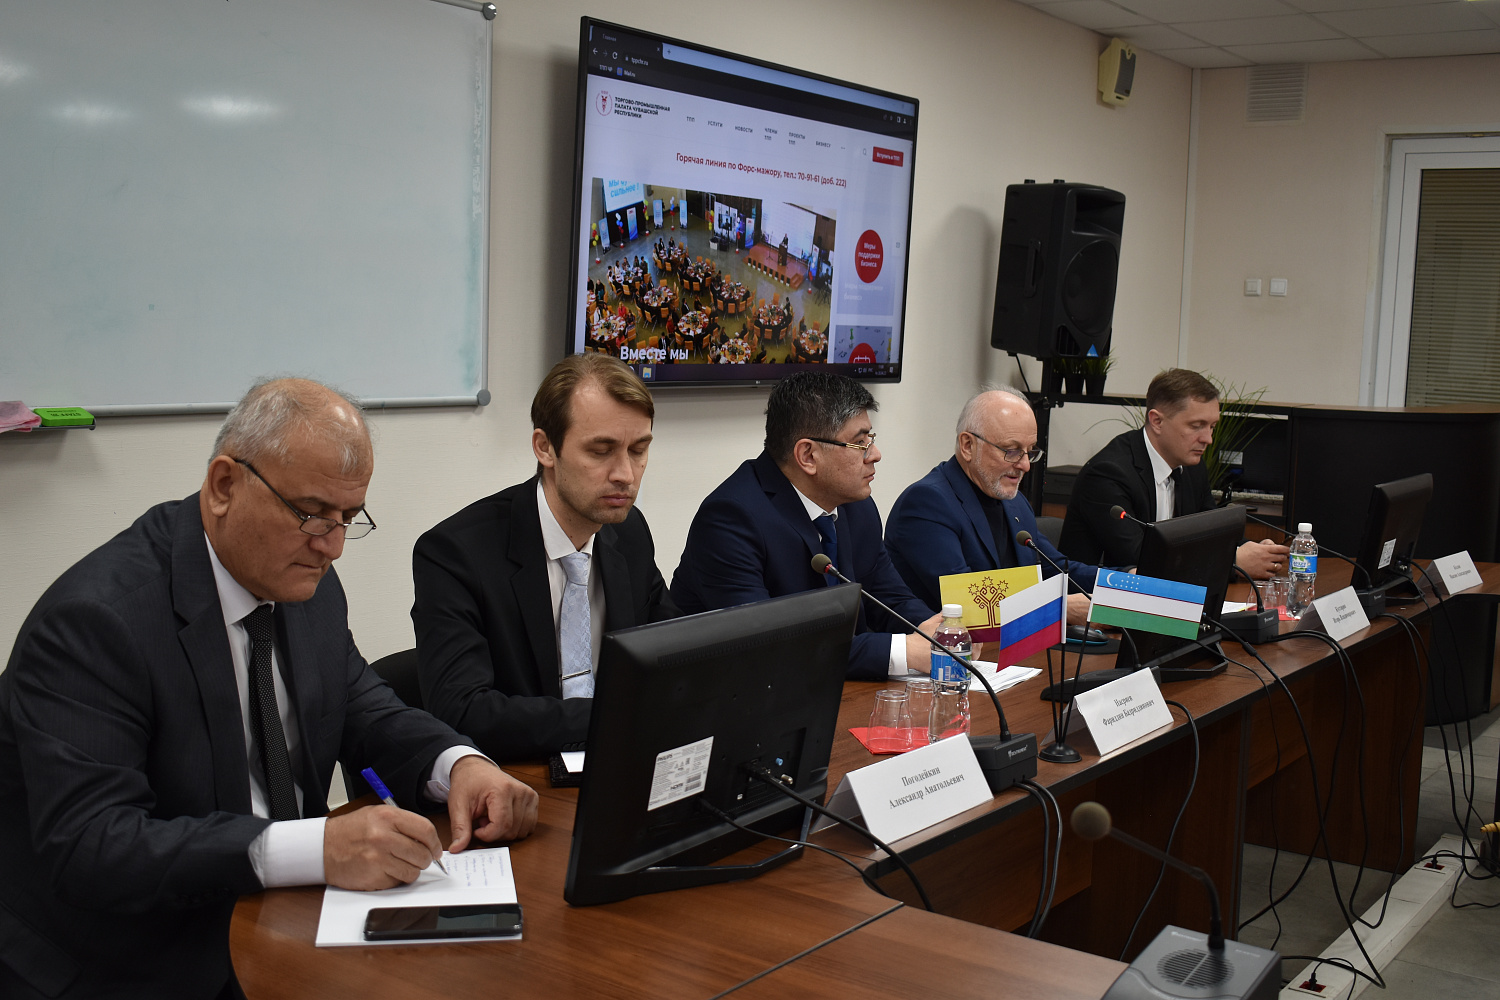 28 апреля 2022 г. в Торгово-промышленной палате Чувашской Республики состоялась встреча с Генеральным консулом Республики Узбекистан в г. Казань.